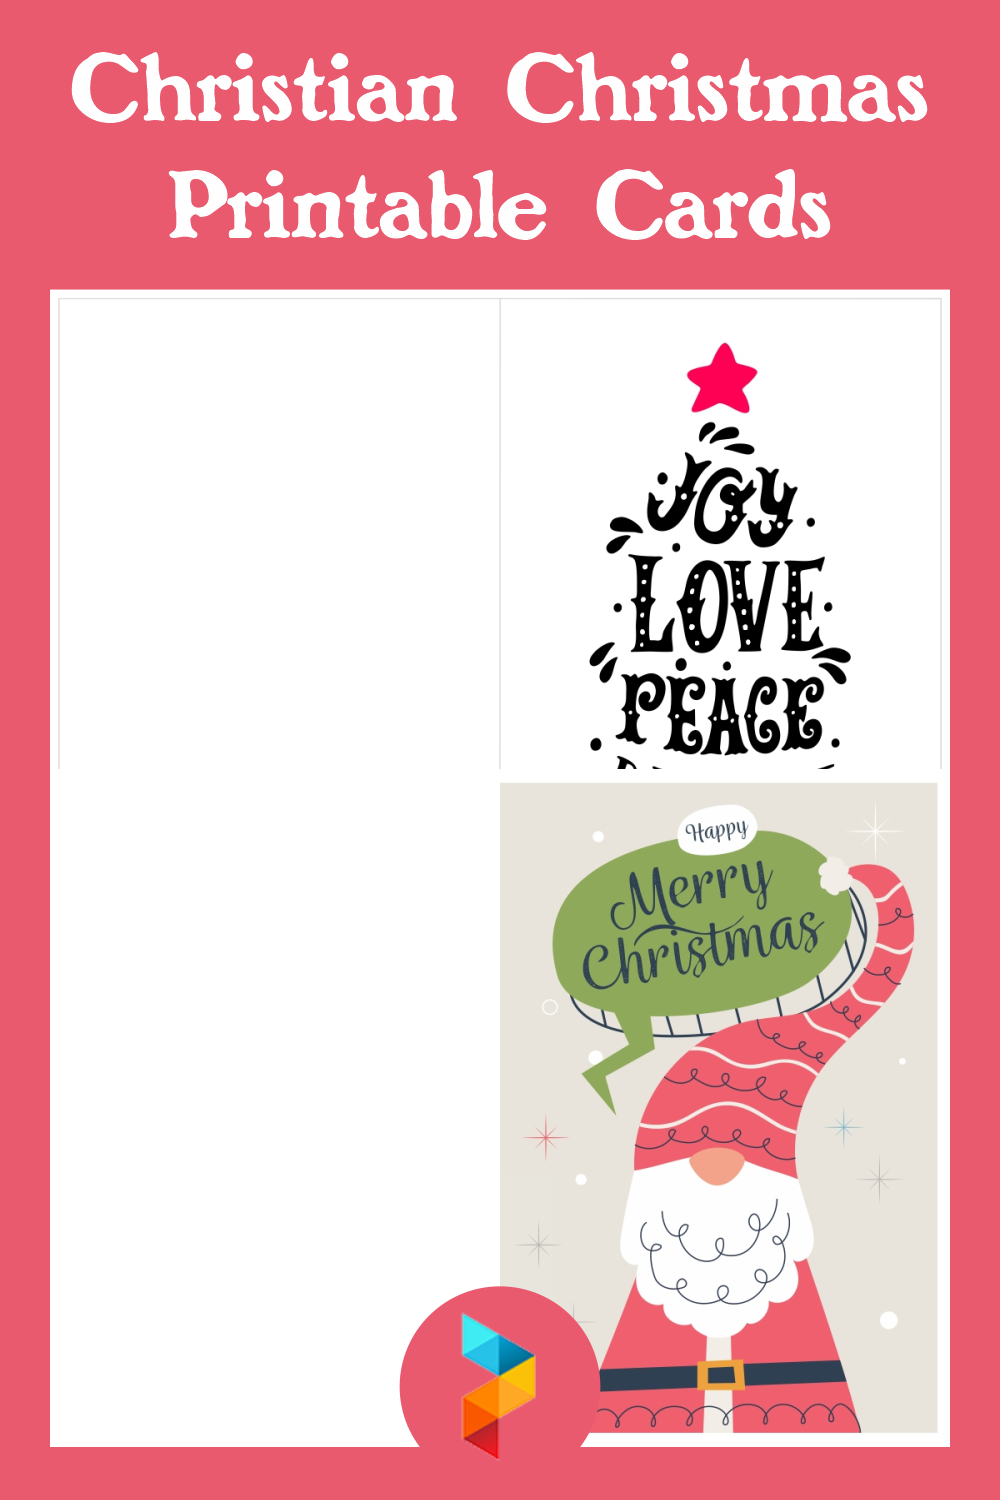 Christian Christmas Printable Cards